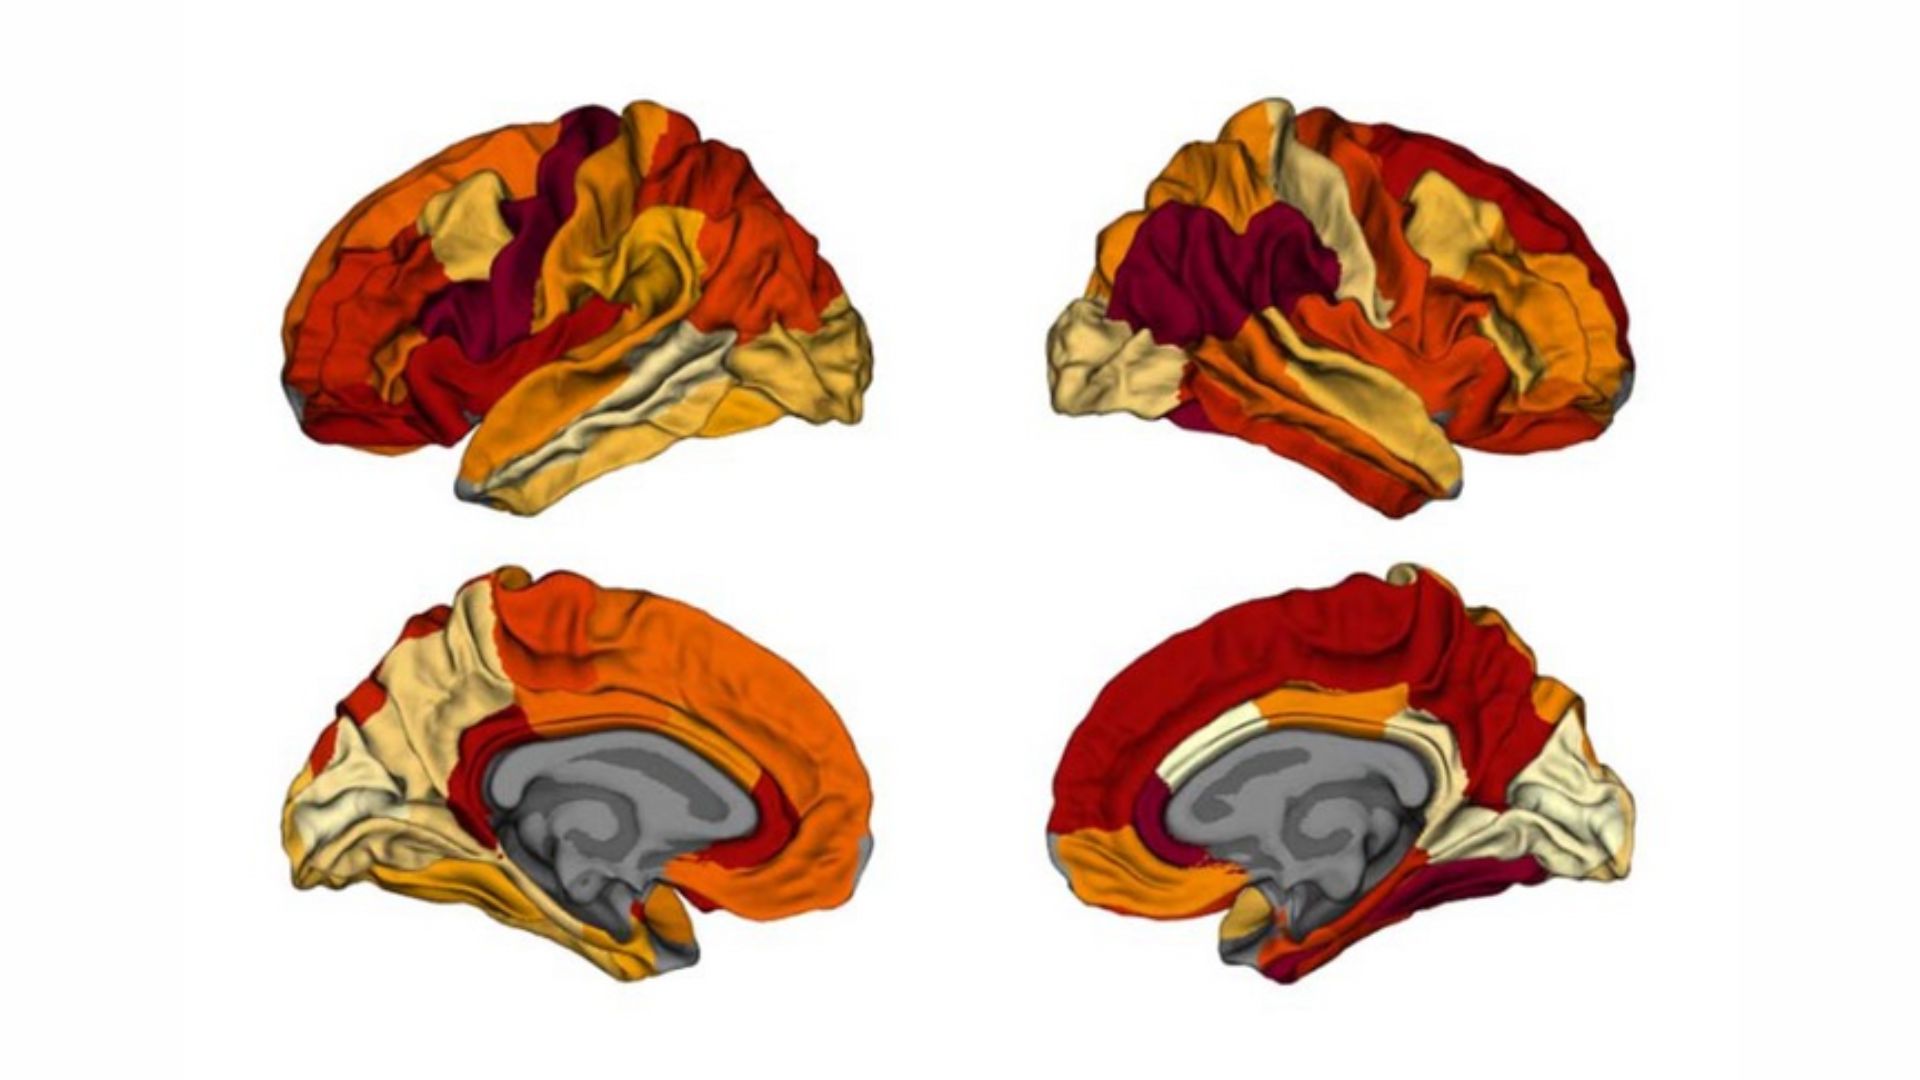 «Amincissement» du cerveau similaire observé chez les personnes âgées obèses et les personnes atteintes de la maladie d’Alzheimer